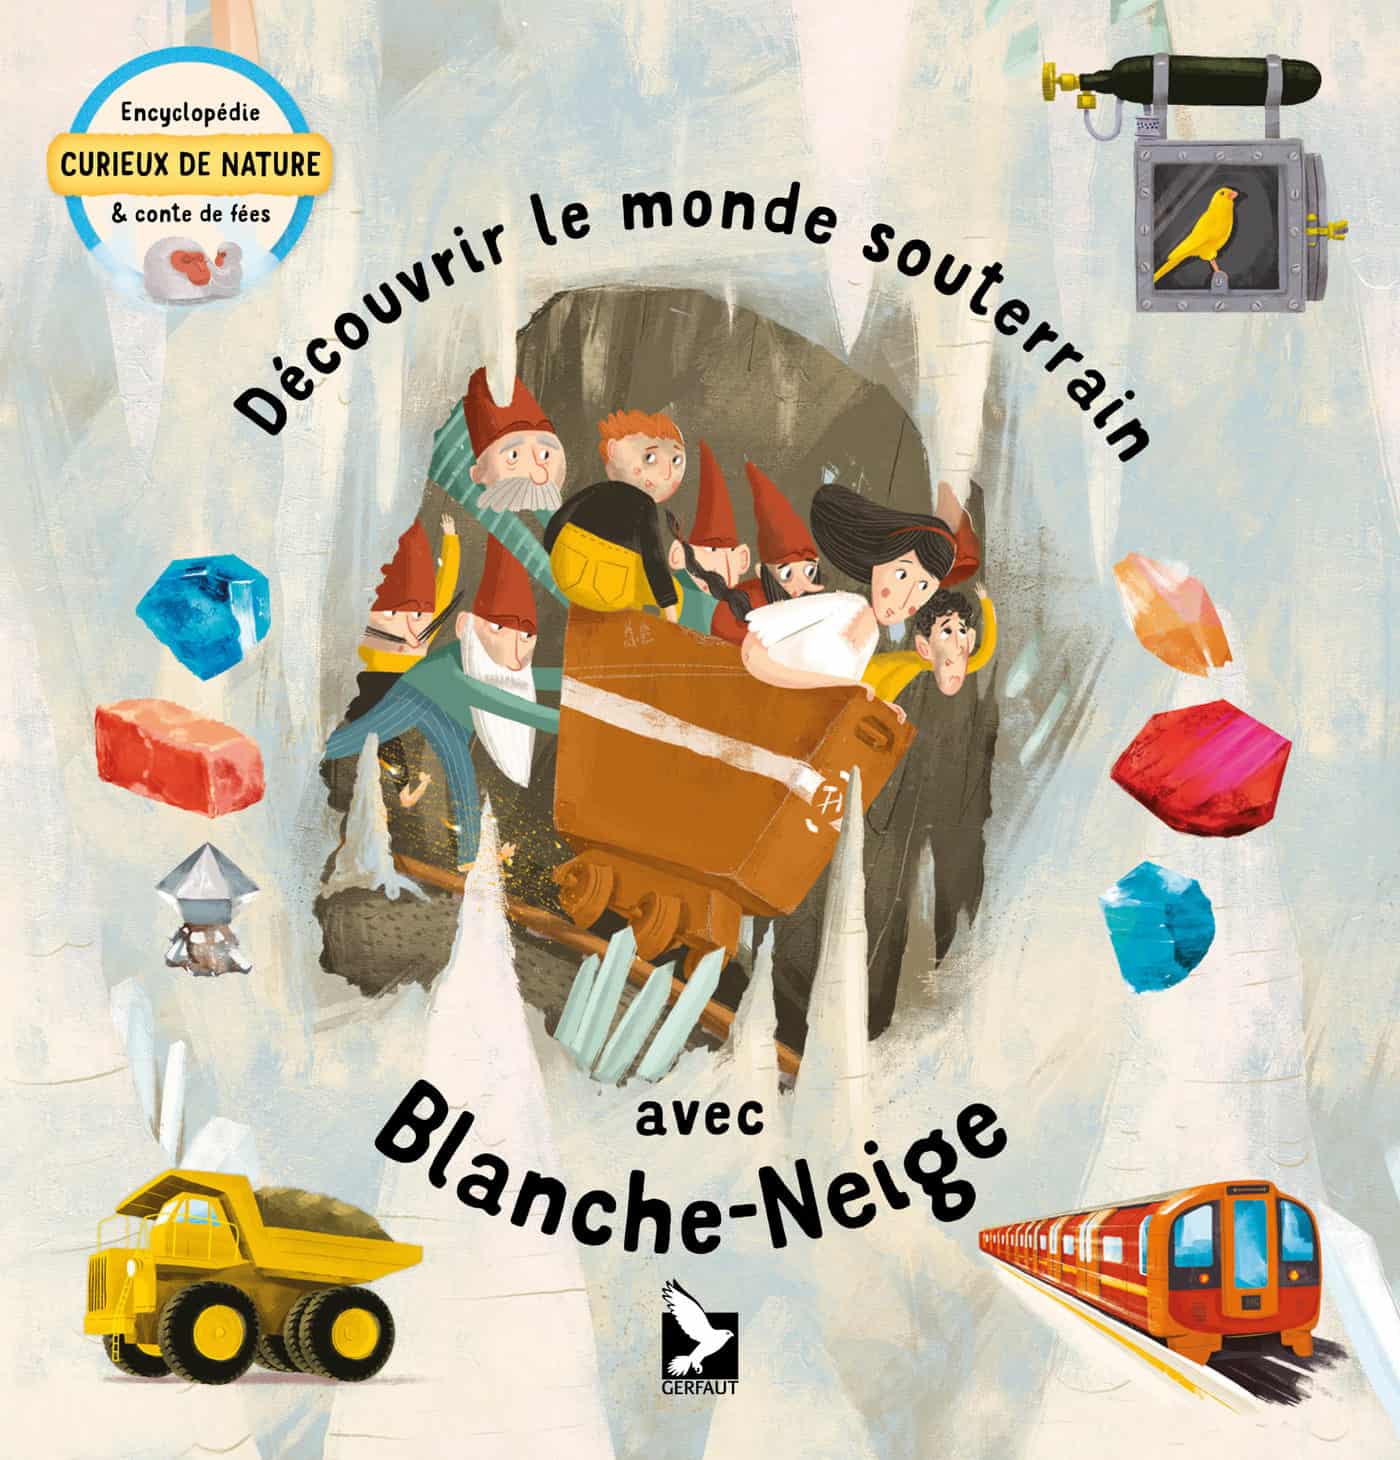 DÉCOUVRIR LE MONDE SOUTERRAIN AVEC BLANCHE-NEIGE livre jeunesse Editions du Gerfaut